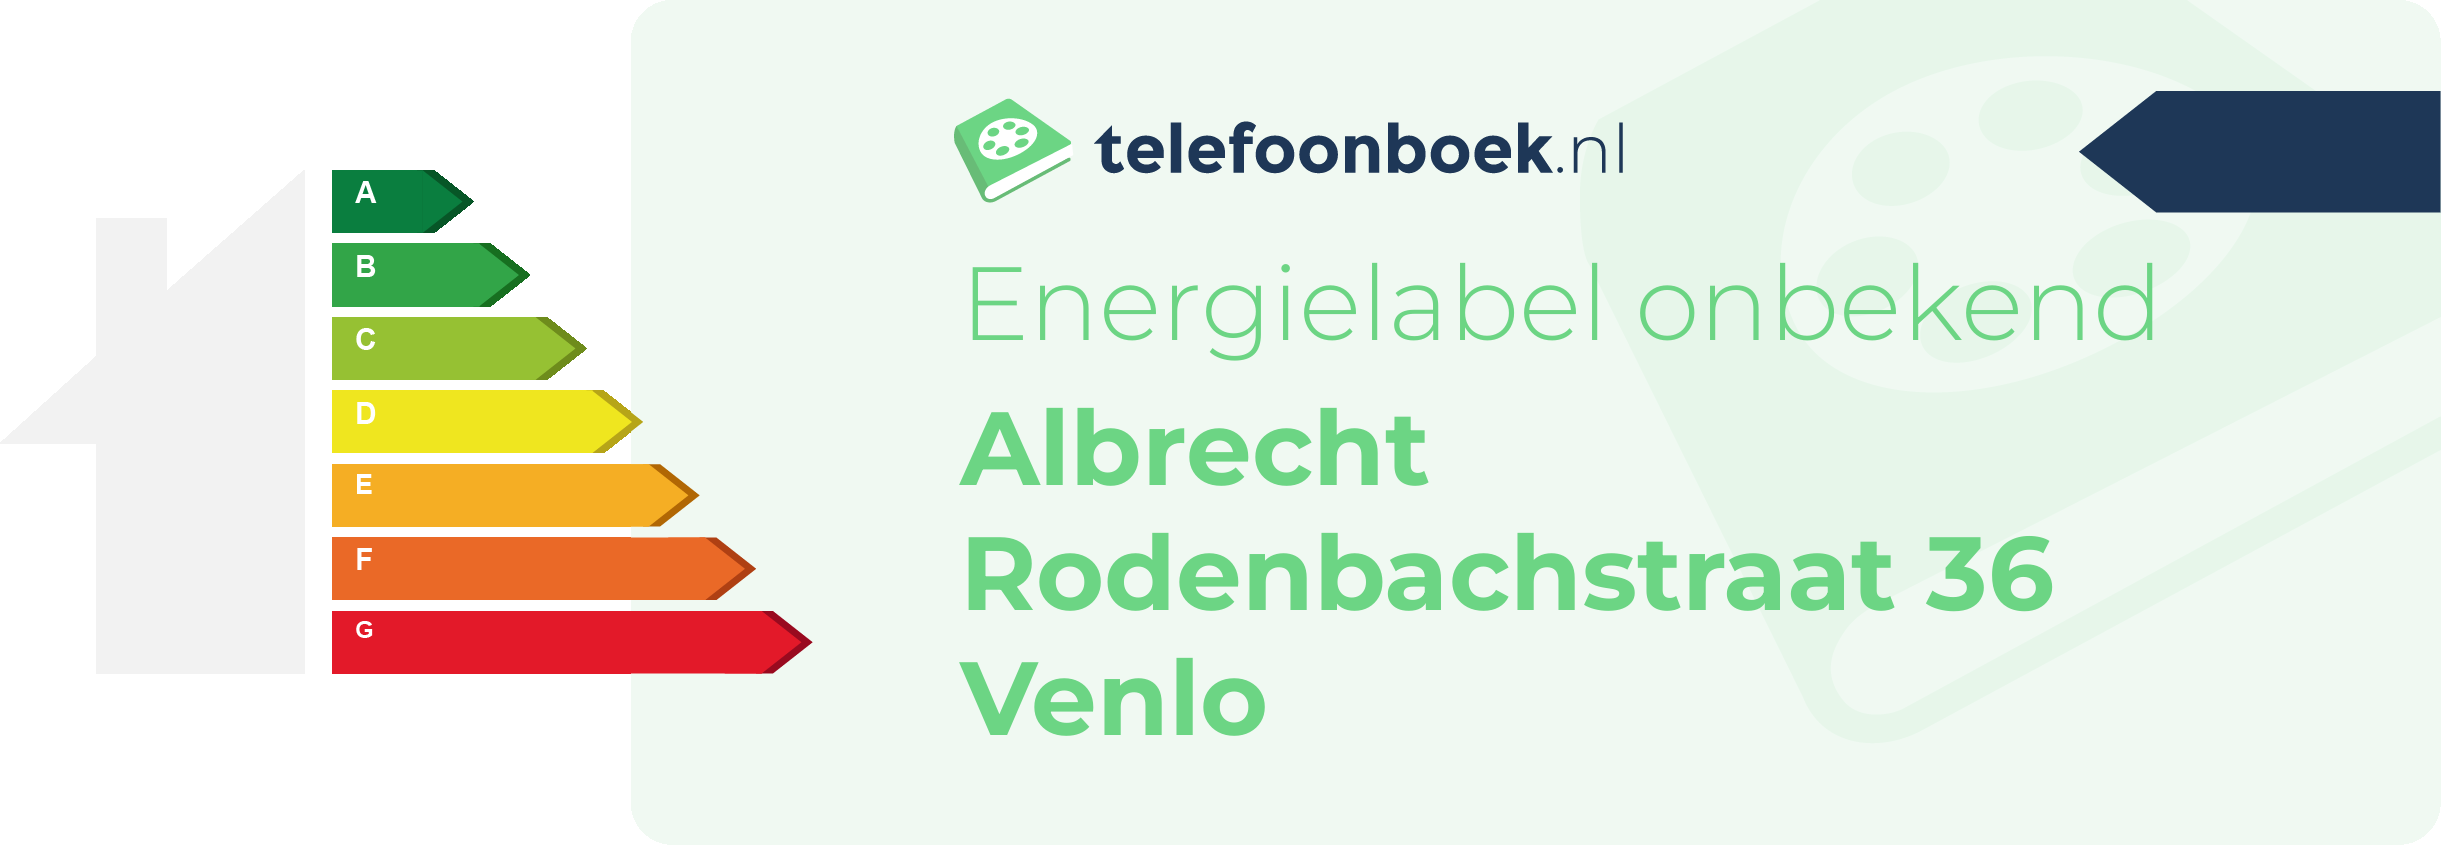 Energielabel Albrecht Rodenbachstraat 36 Venlo